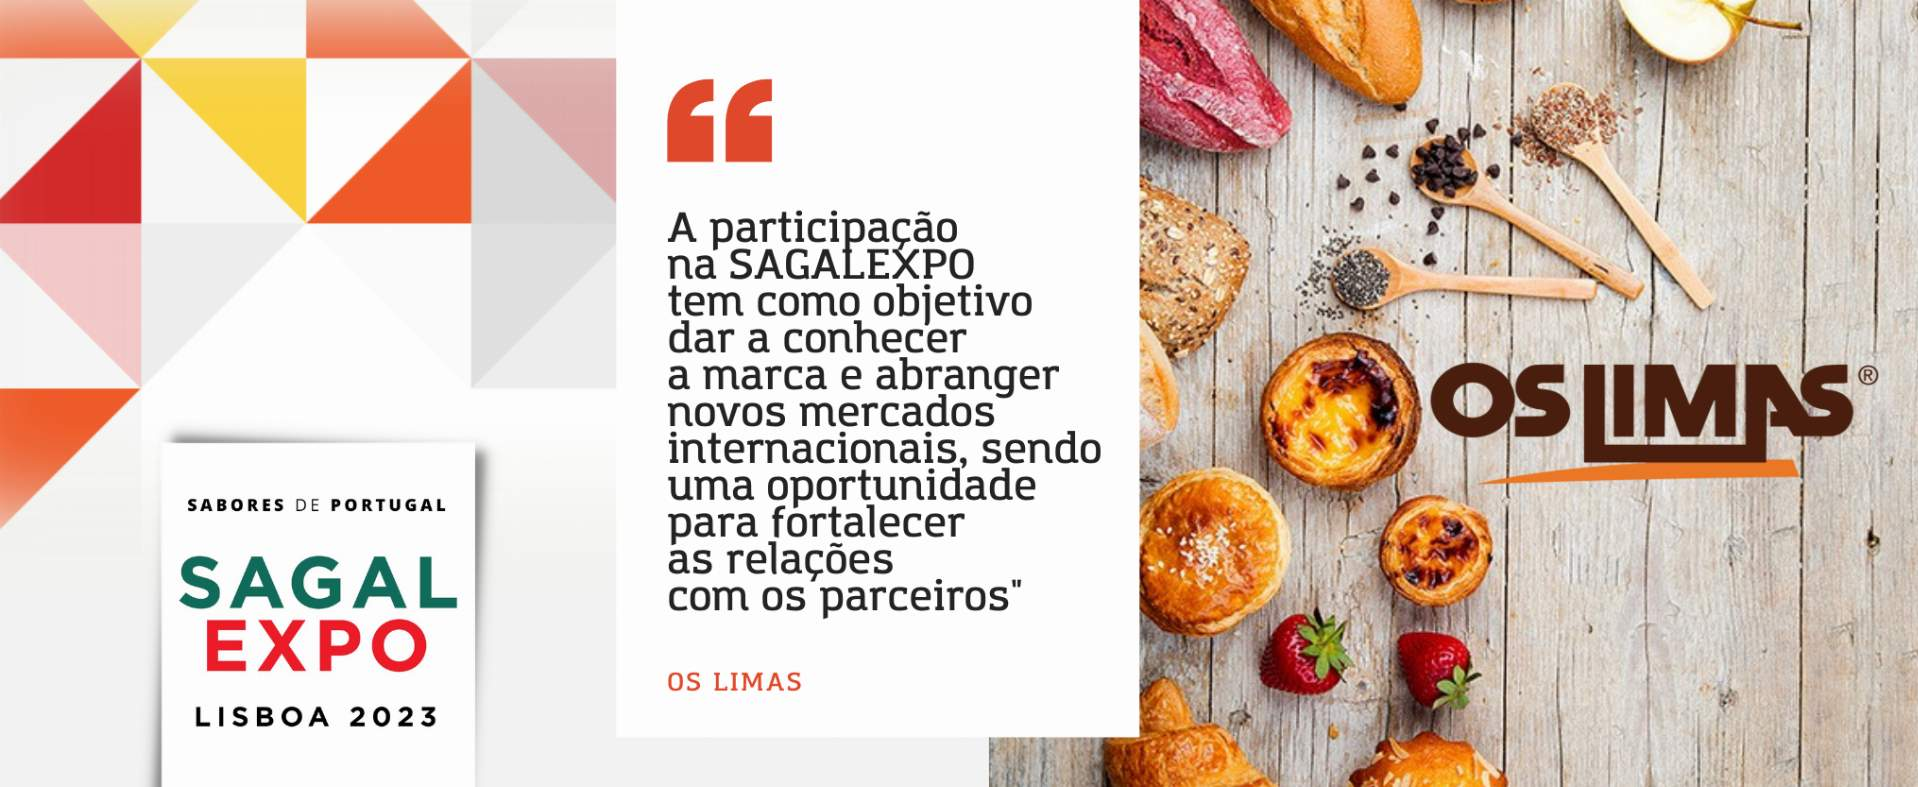 Os Limas: “A participação na SAGALEXPO tem como objetivo dar a conhecer a marca e abranger novos mercados internacionais, sendo uma oportunidade para fortalecer as relações com os parceiros”